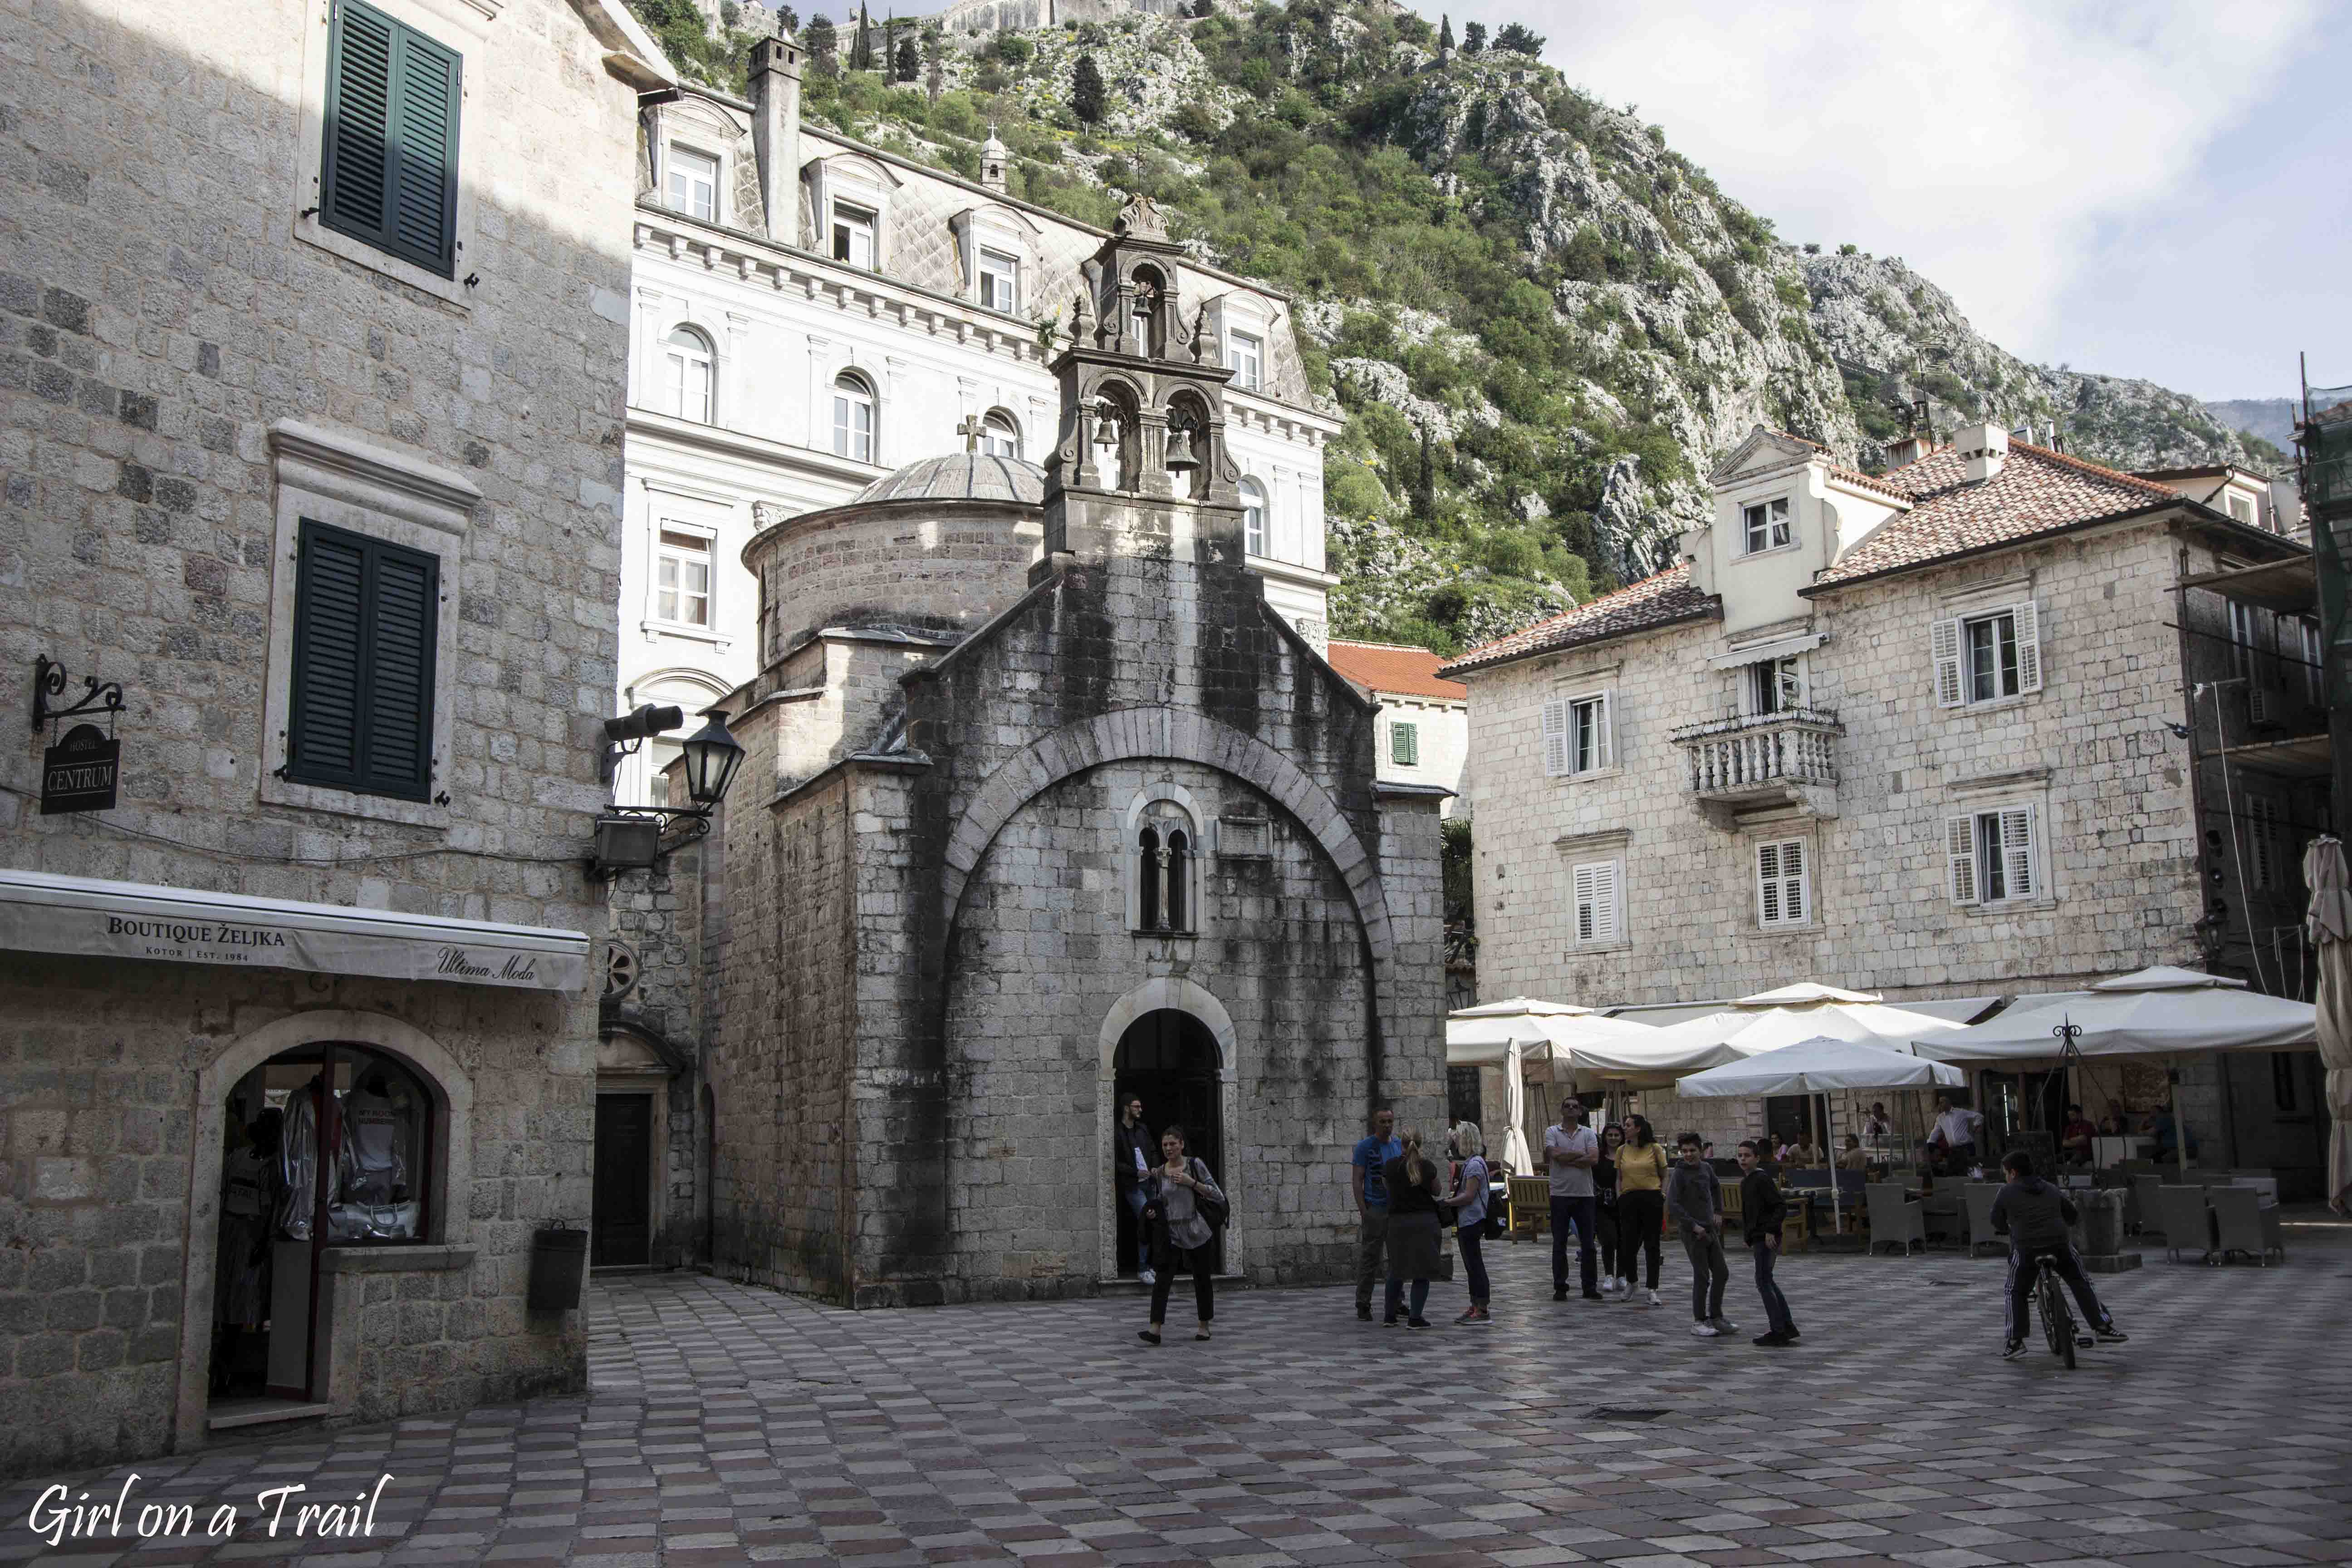 Montenegro, Kotor